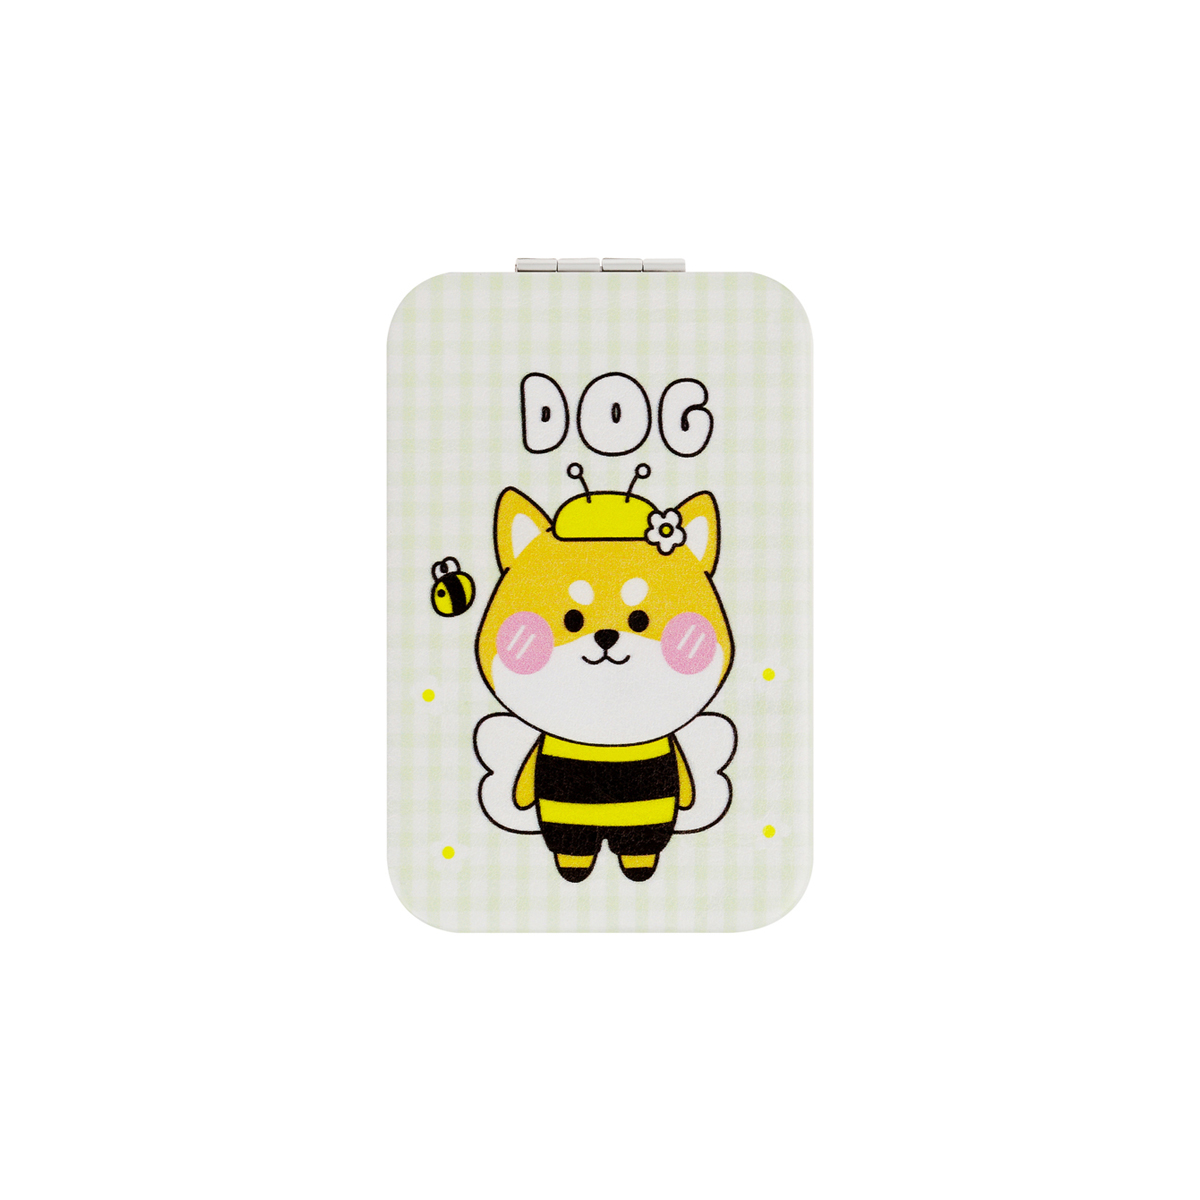    MESHU Lovely bee